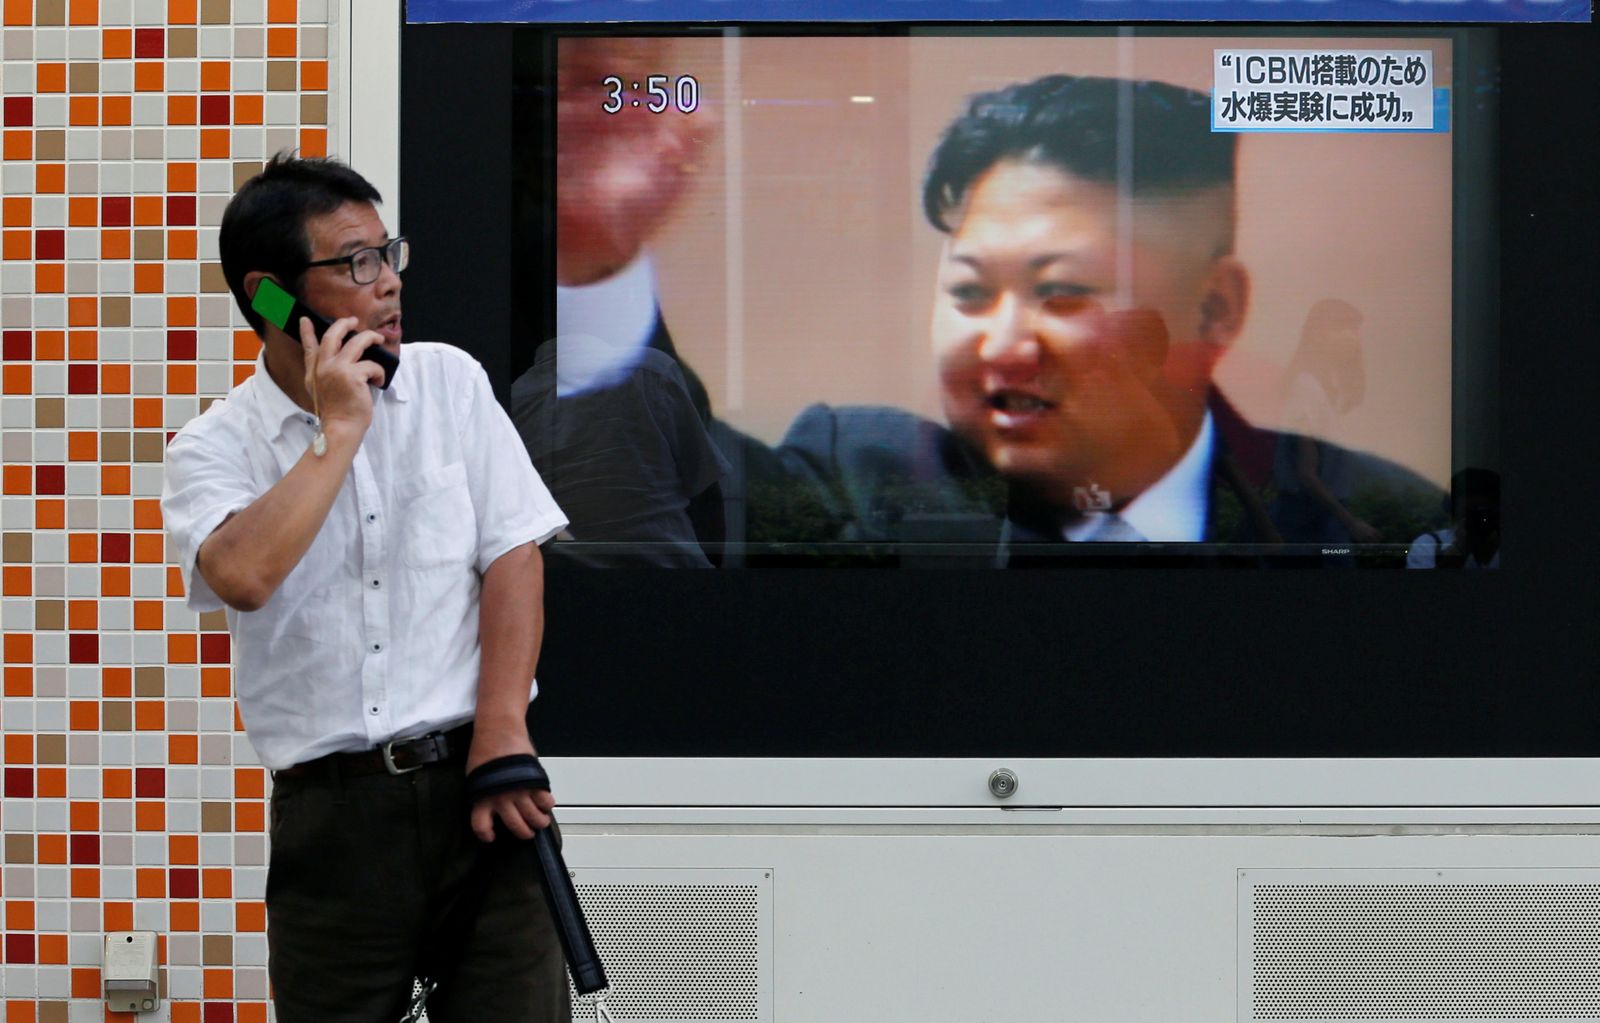 شاشة في العاصمة اليابانية طوكيو تعرض تغطية عن التجربة النووية في كوريا الشمالية- 3 سبتمبر 2017 - REUTERS